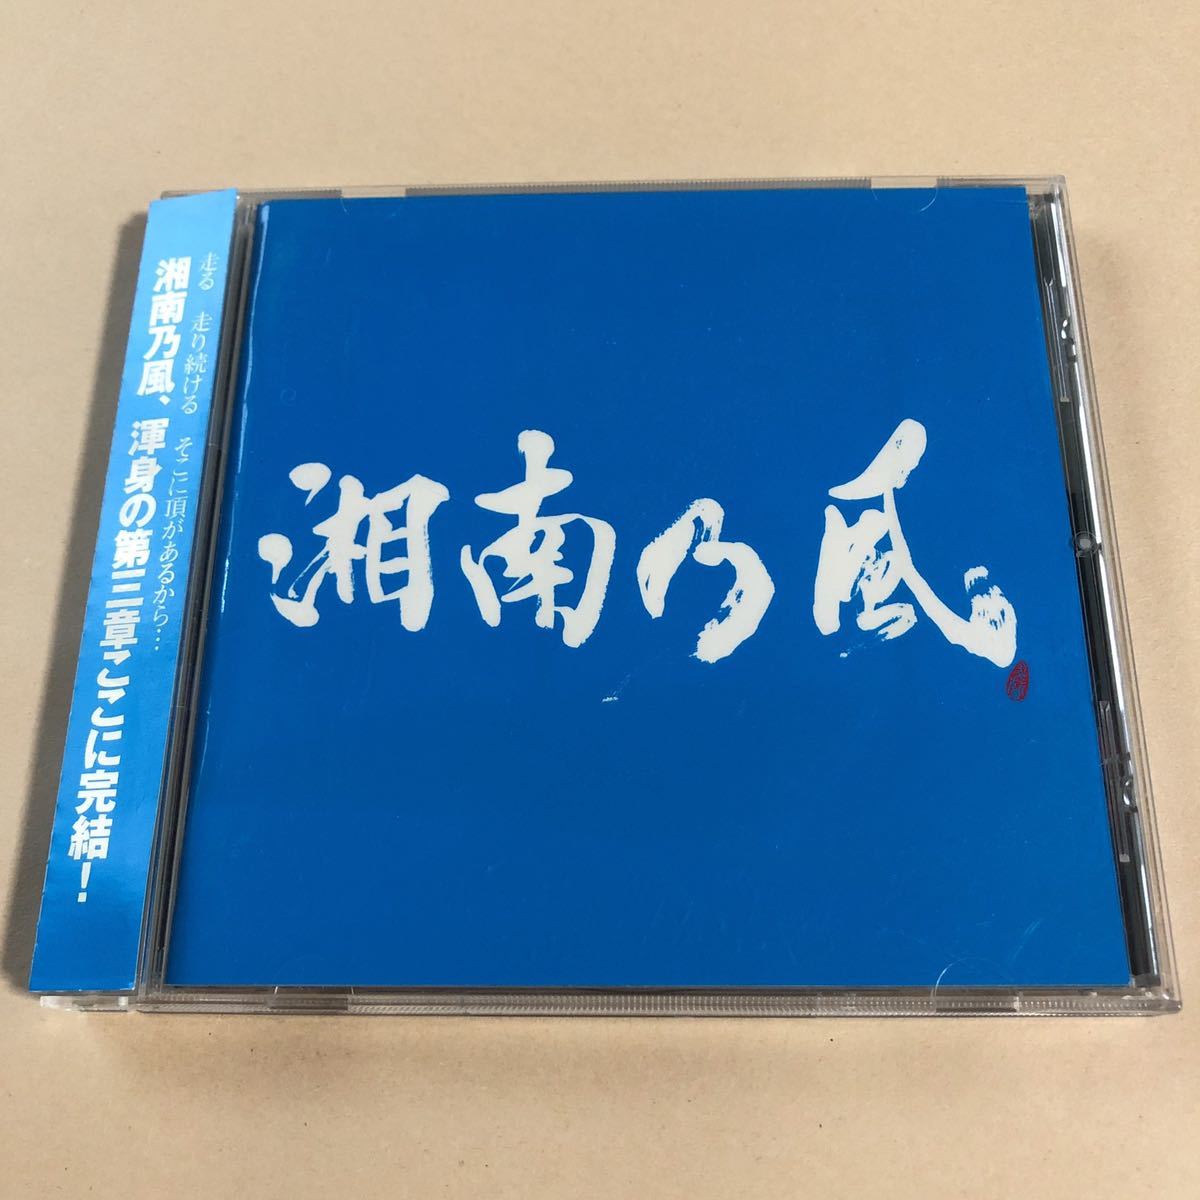 湘南乃風 1CD 「Riders High」_画像1